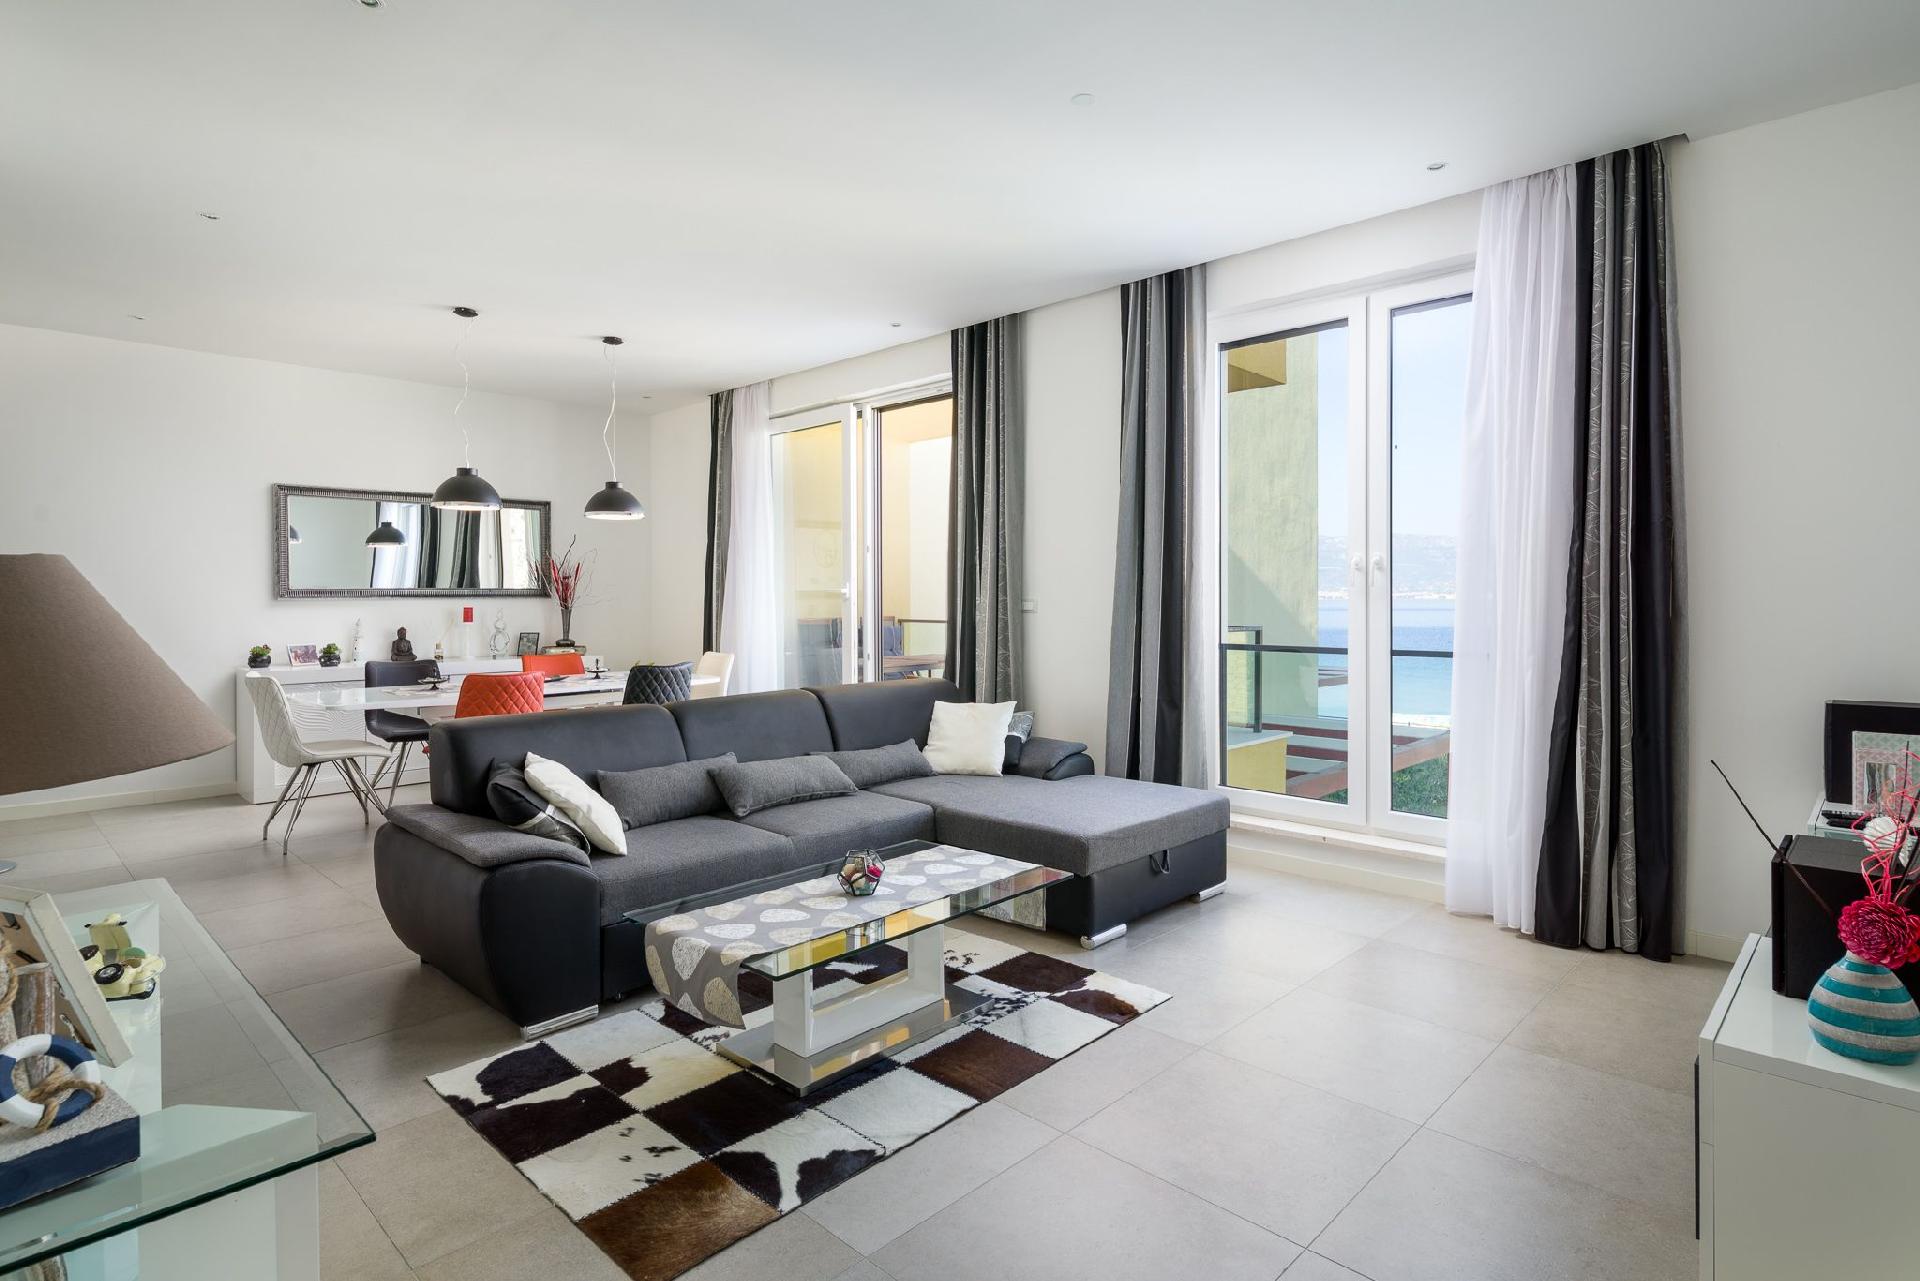 Ferienwohnung für 4 Personen ca. 100 m²   in Dalmatien